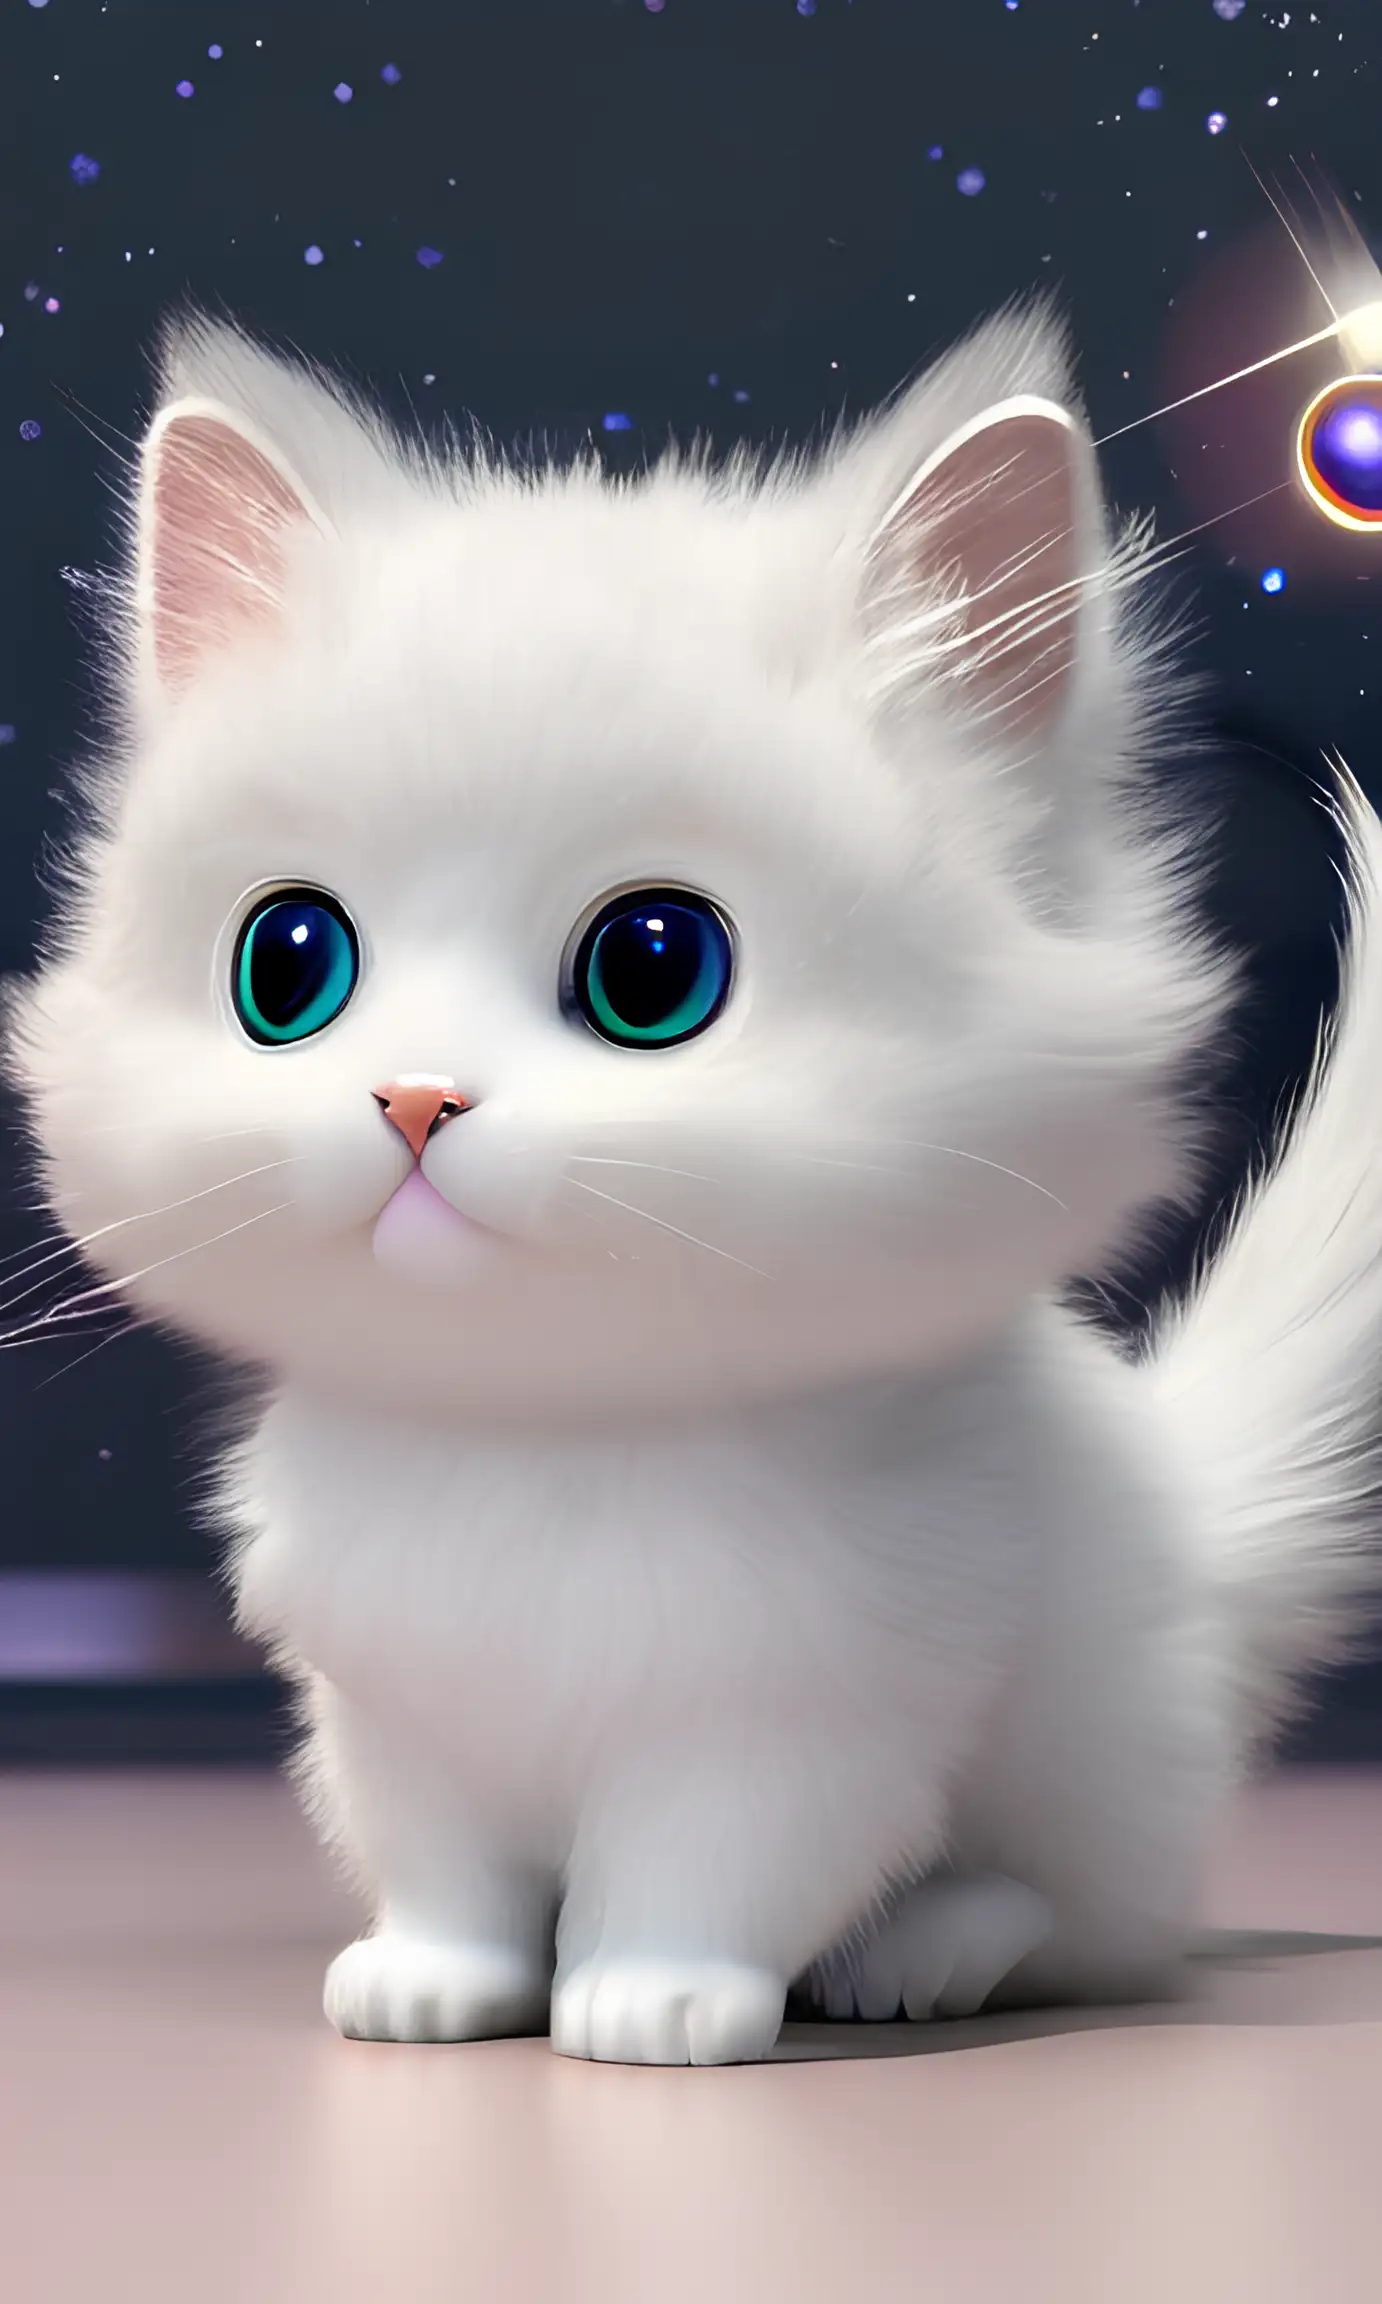 اجمل الصور قطط صغيرة بيضاء